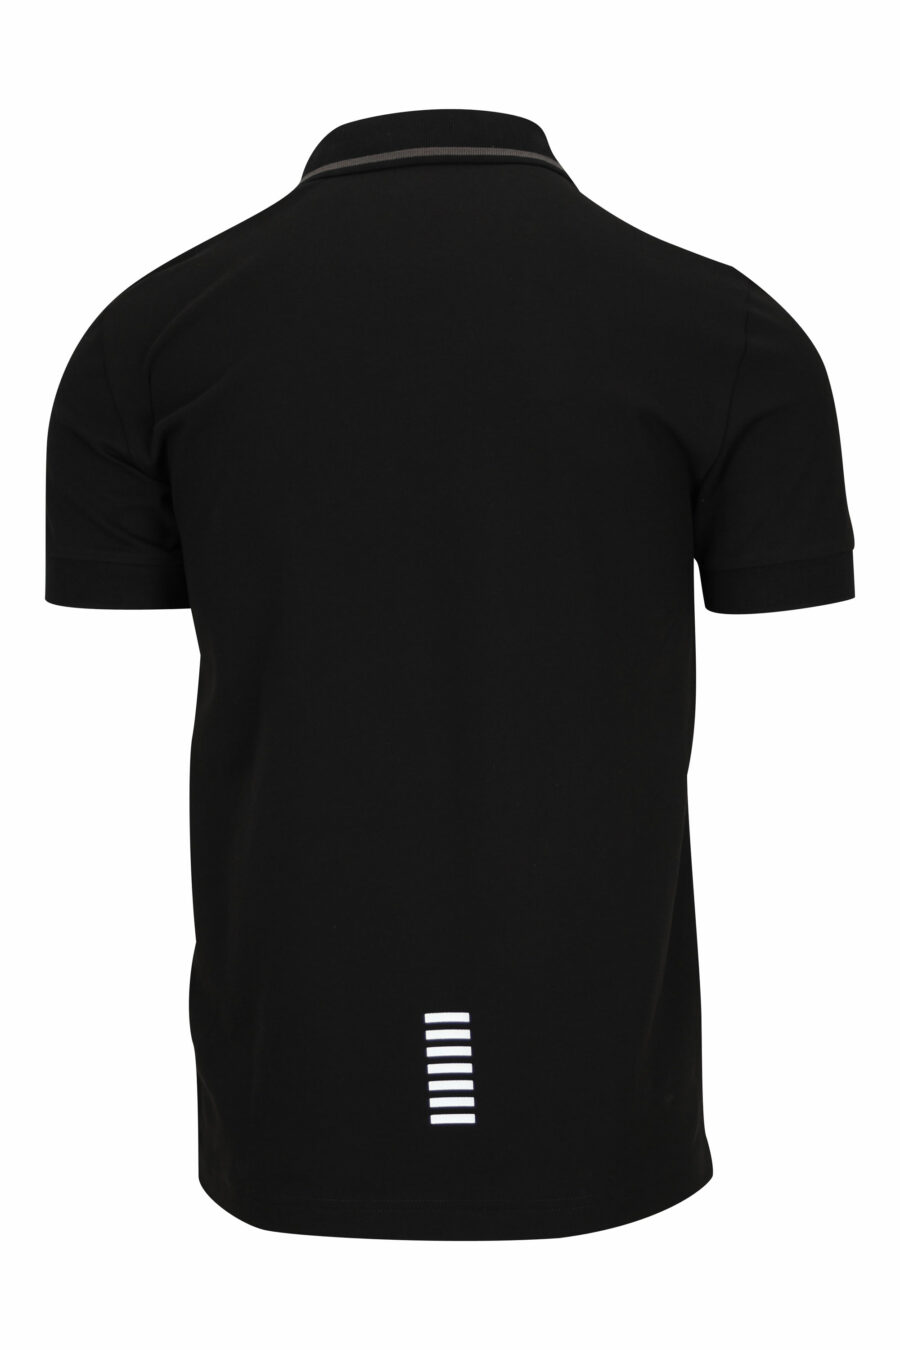 Schwarzes Poloshirt mit "lux identity" Minilogo und grauer Kragenlinie - 8055187161145 1